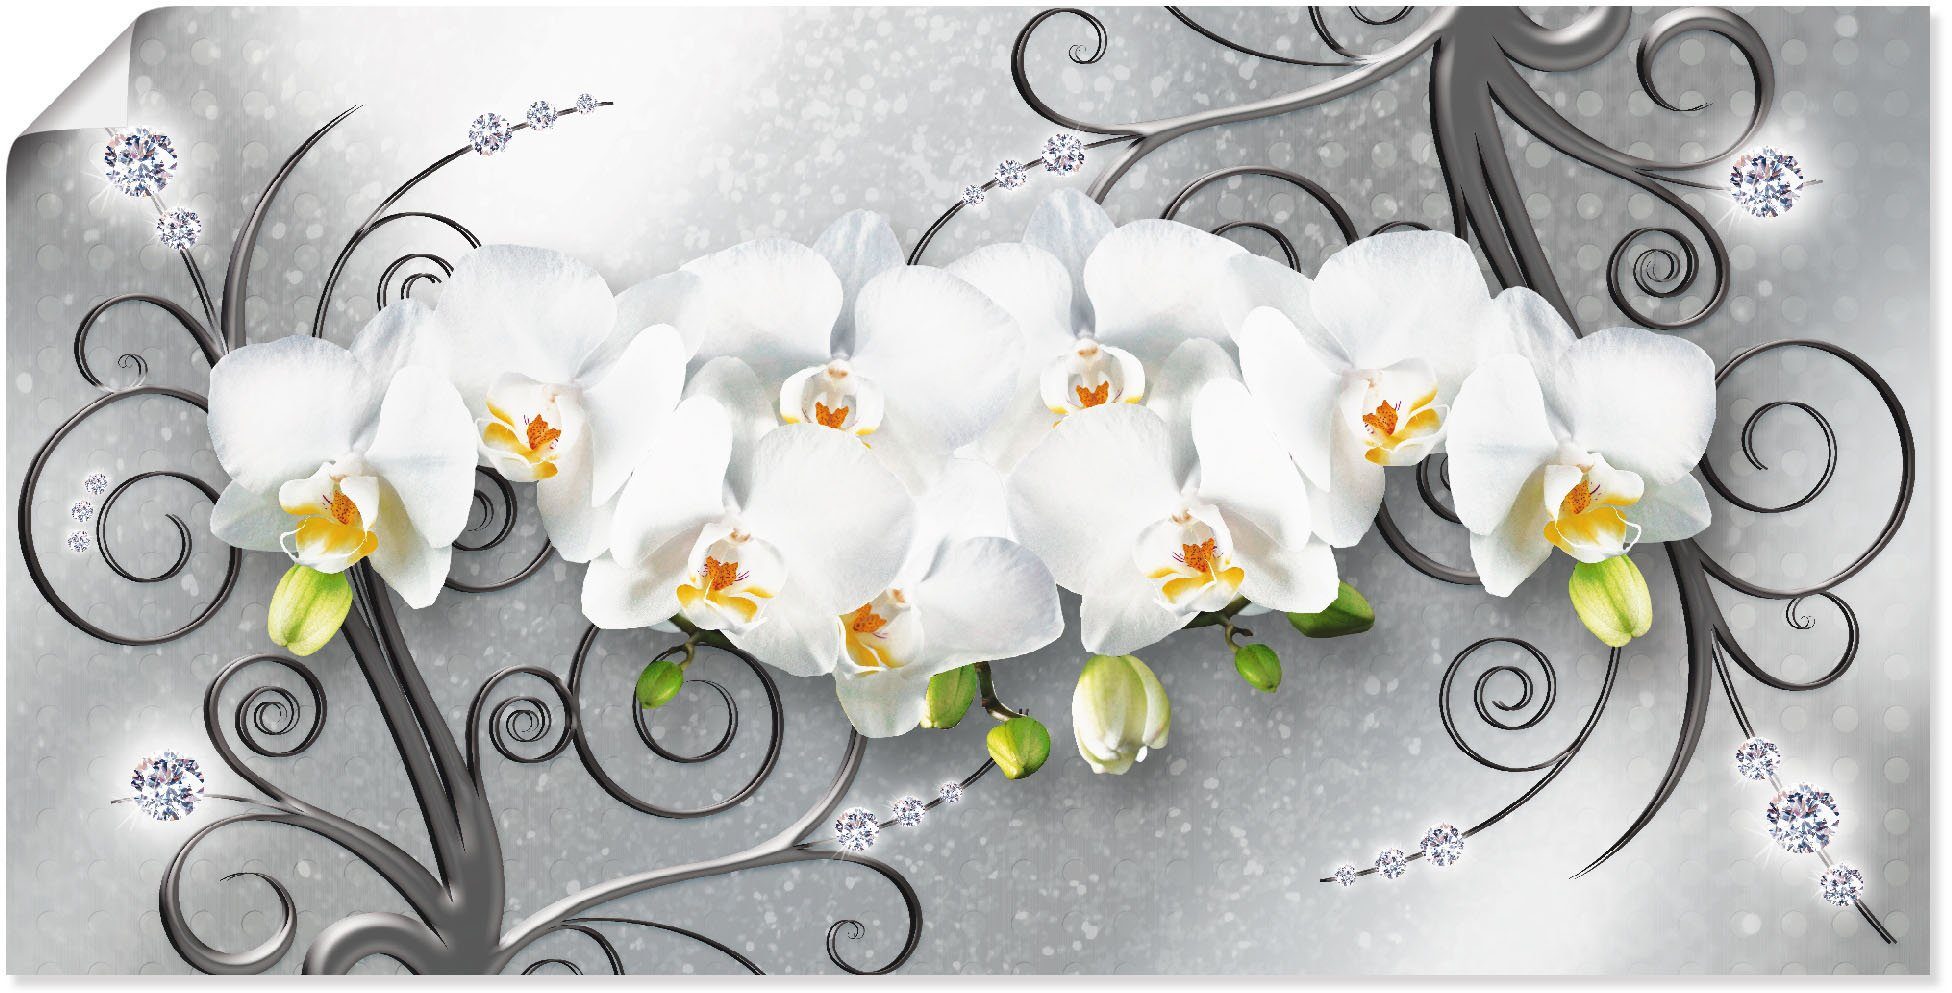 artland artprint witte orchideen op ornamenten als artprint van aluminium, artprint voor buiten, artprint op linnen, poster, muursticker grijs